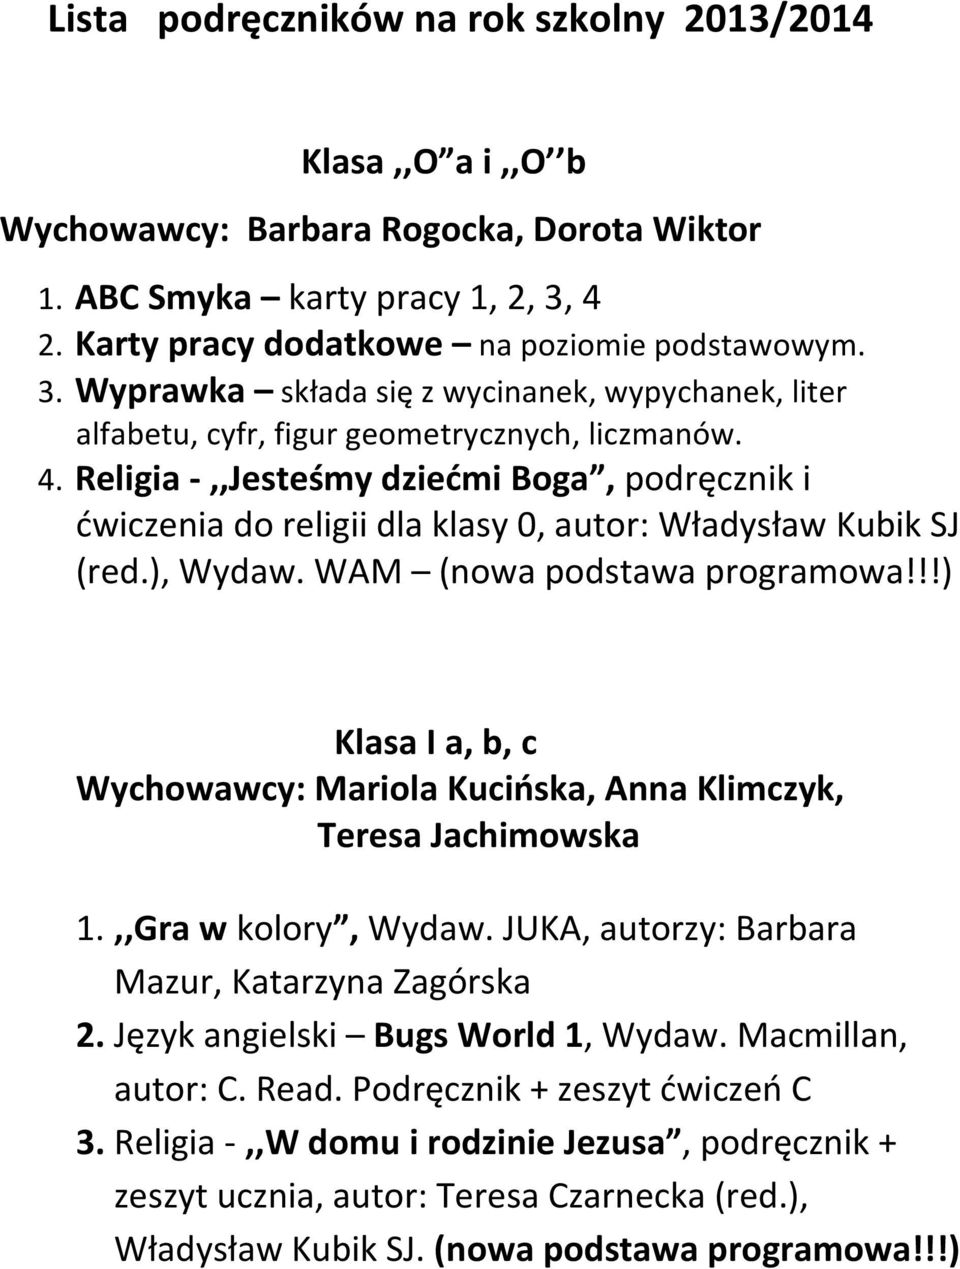 Religia -,,Jesteśmy dziećmi Boga, podręcznik i ćwiczenia do religii dla klasy 0, autor: Władysław Kubik SJ (red.), Wydaw. WAM (nowa podstawa programowa!